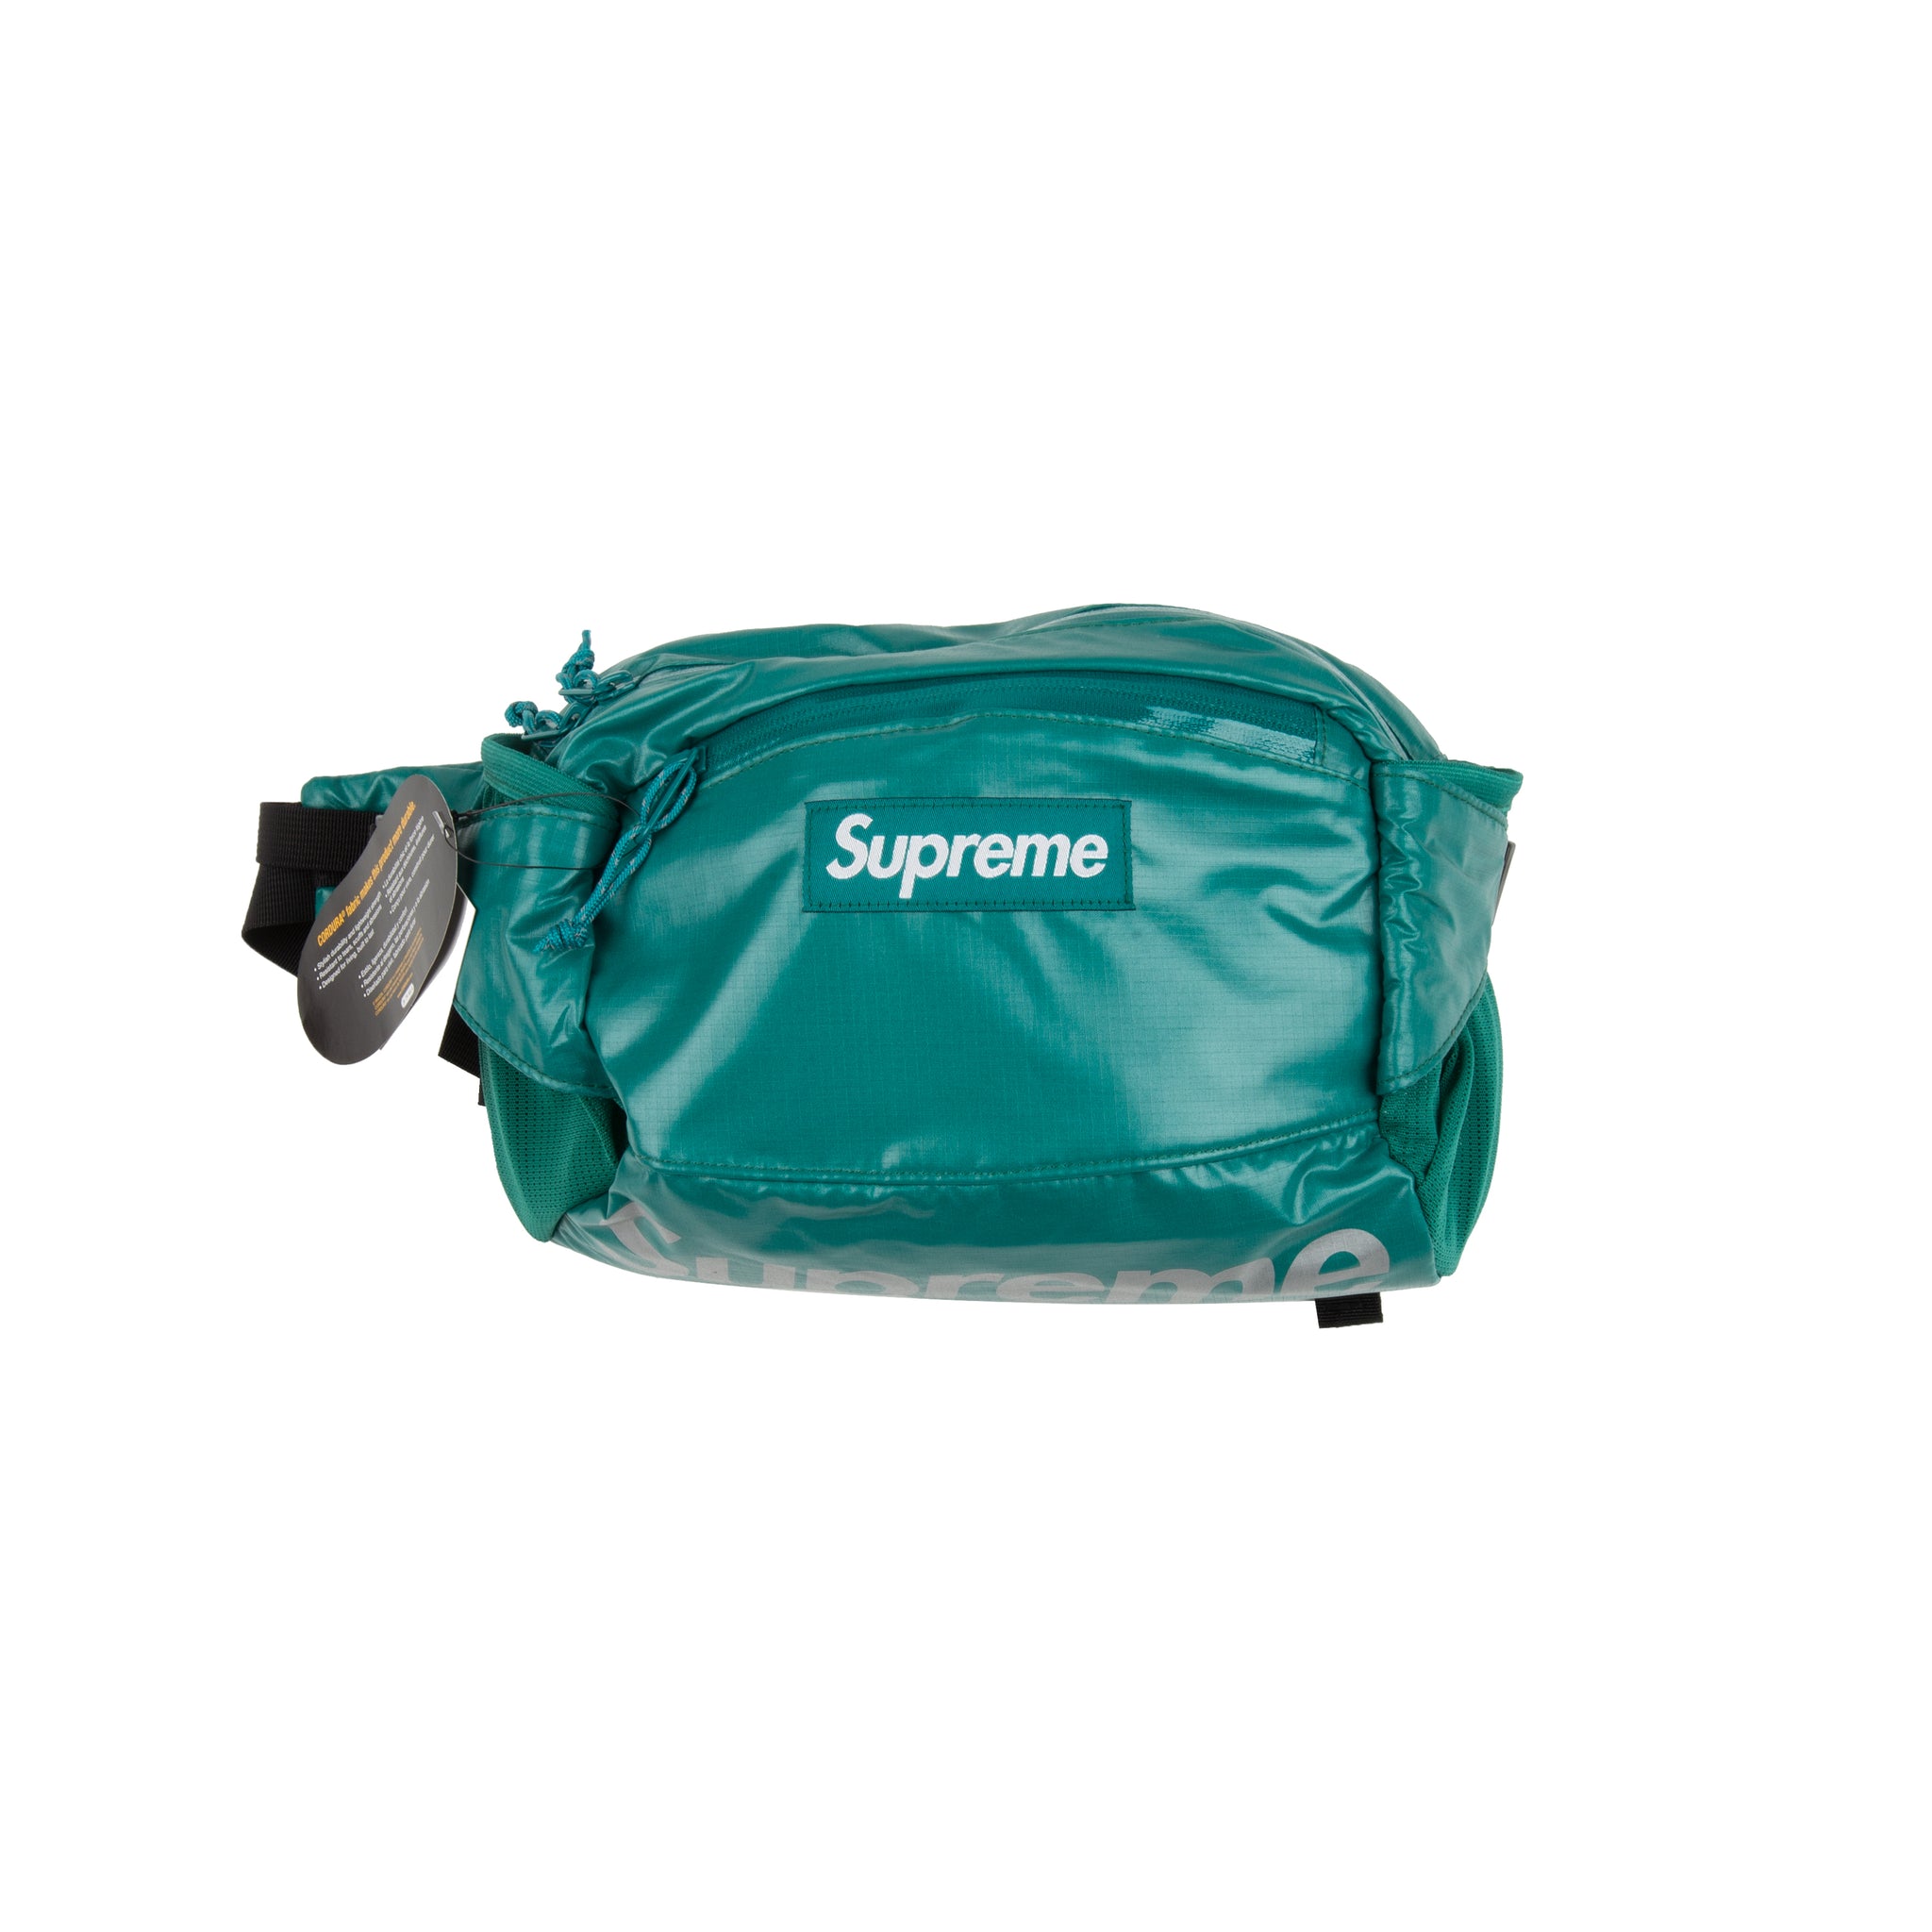 Supreme Teal Waist Bag